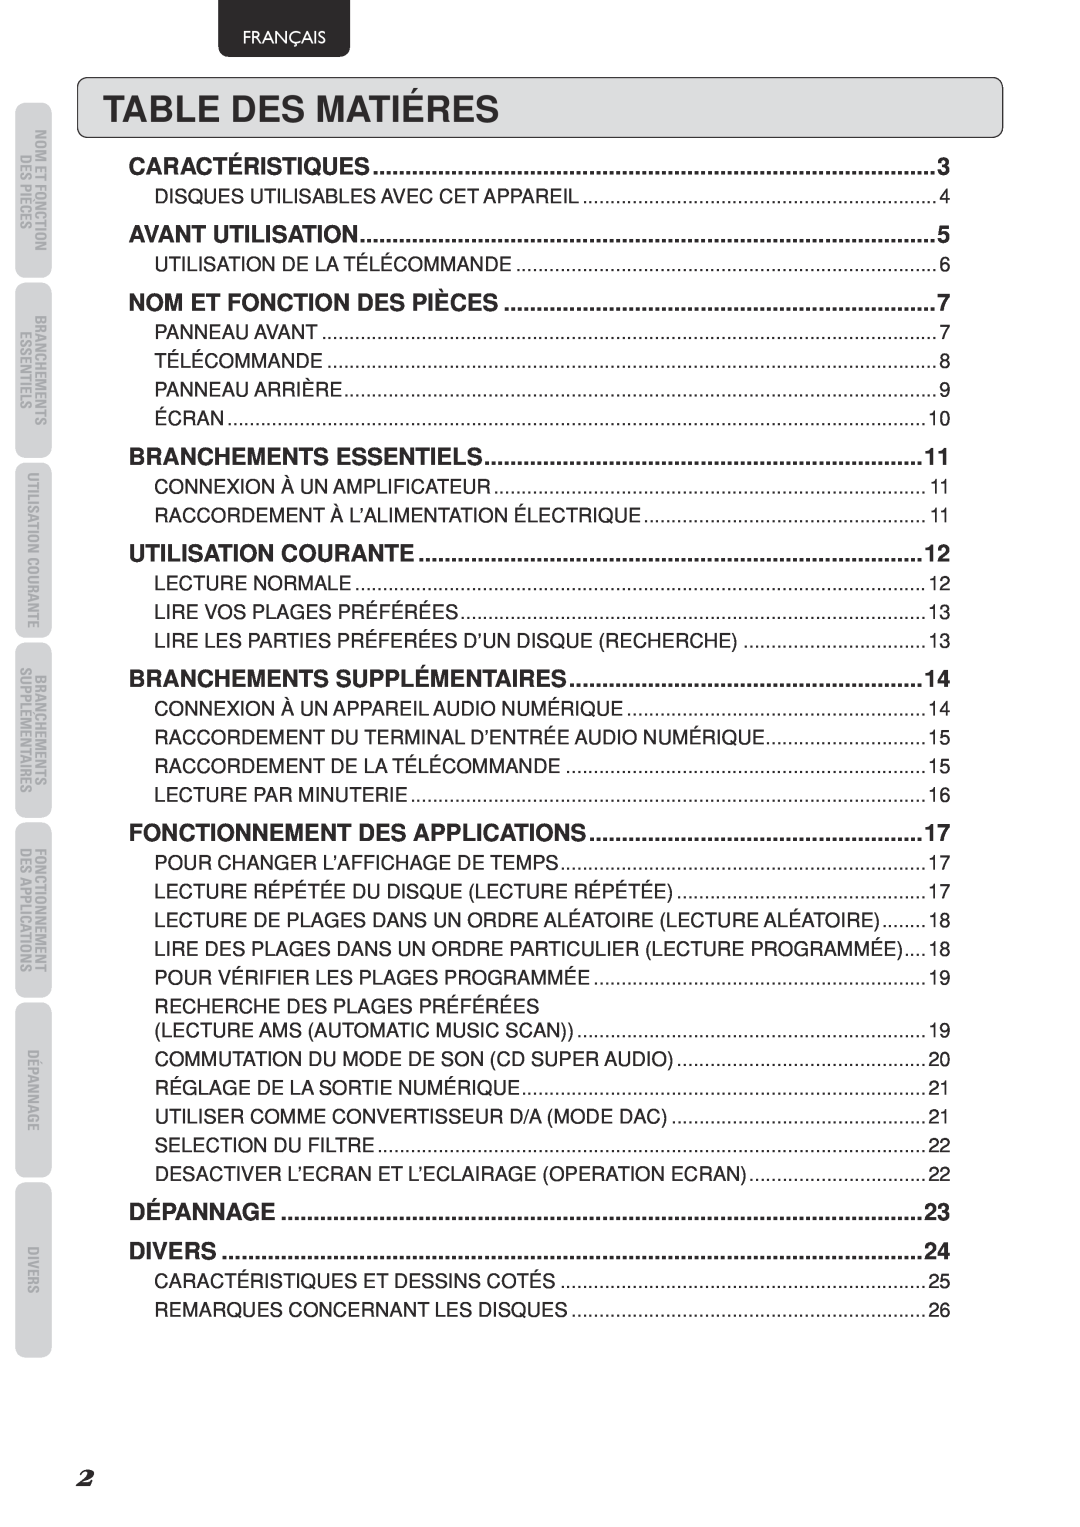 Marantz SA-15S2 Table Des Matiéres, Branchements Essentiels, Branchements Supplémentaires, Fonctionnement Des Applications 